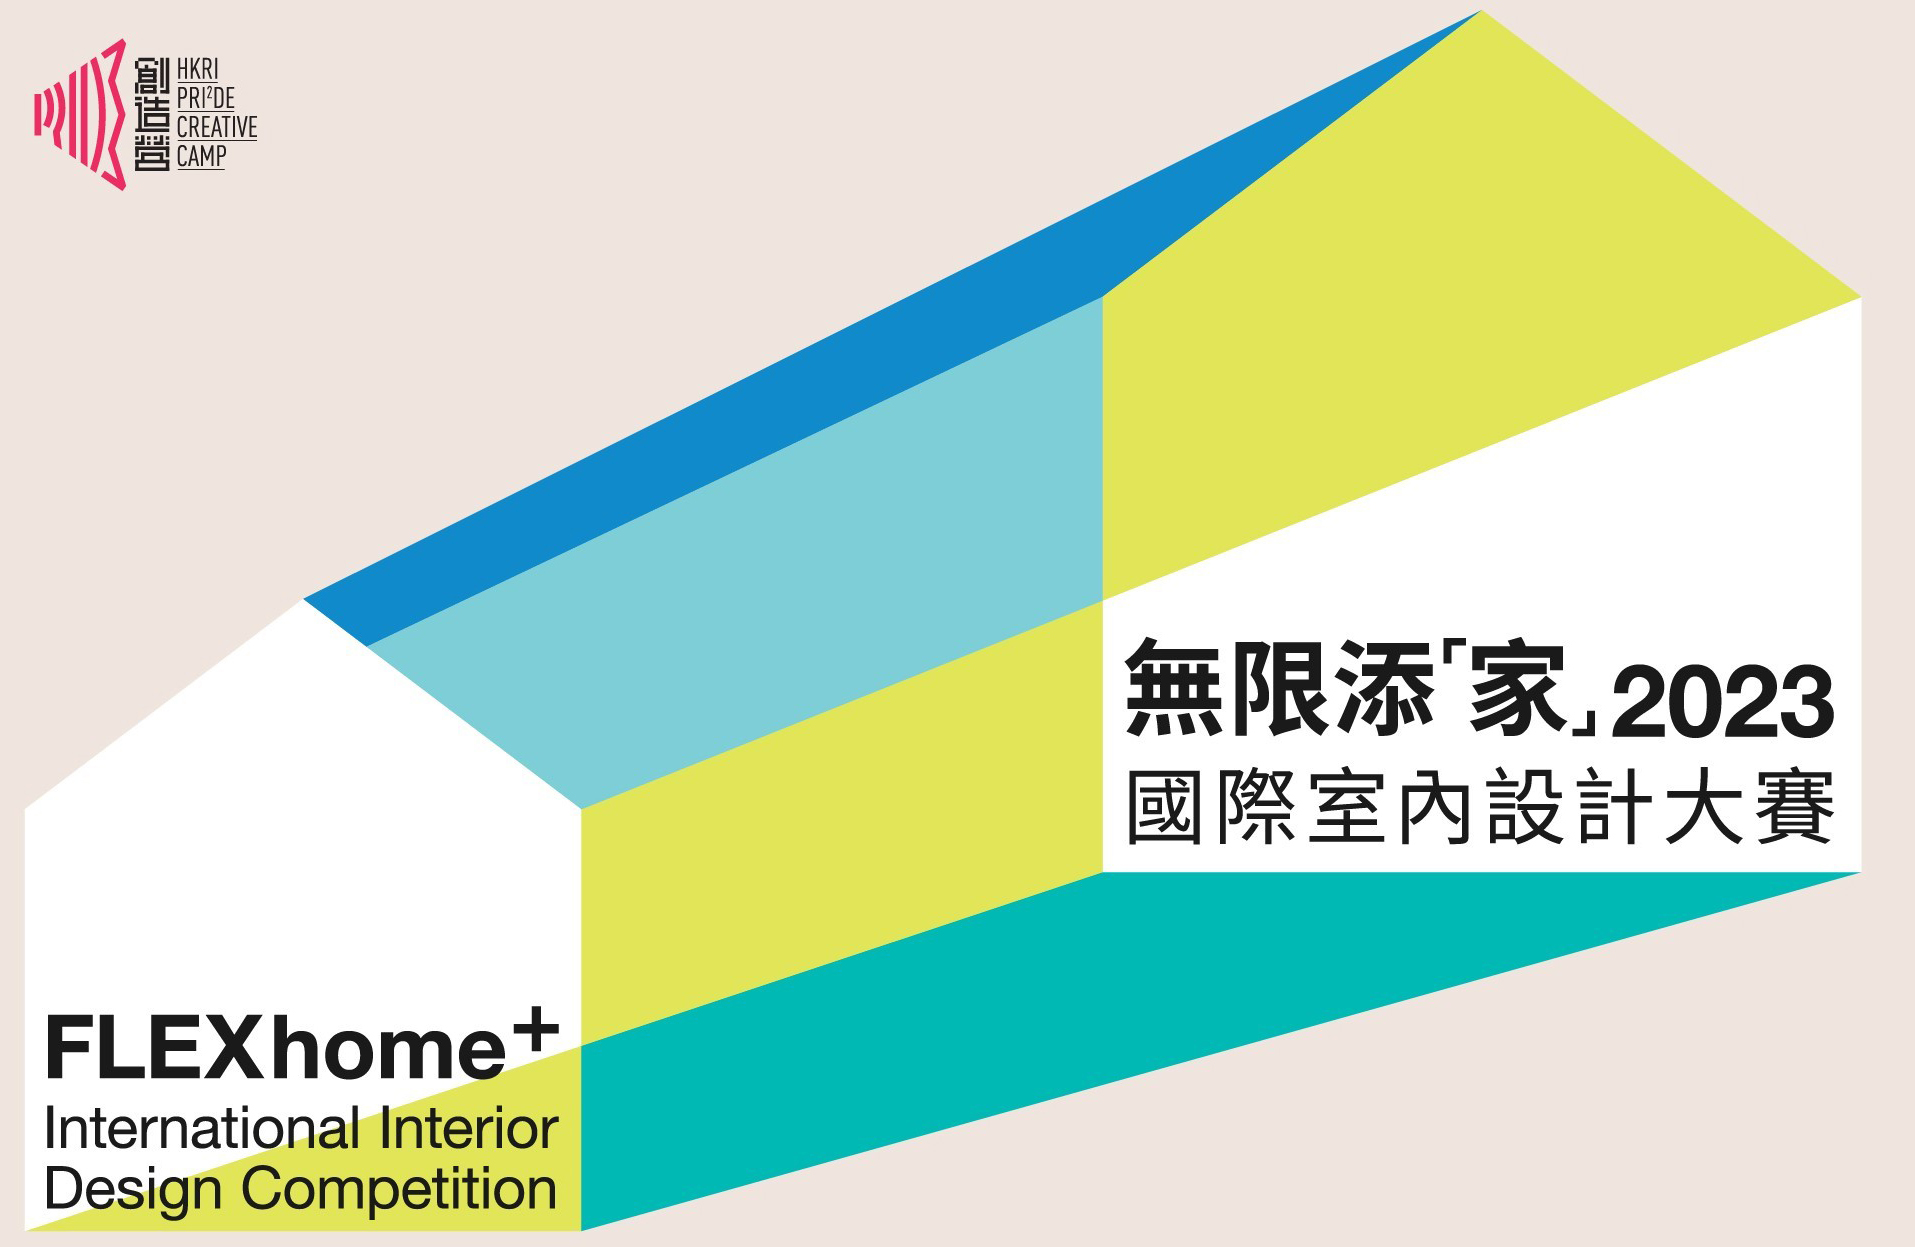 香港興業國際發起全球設計大賽 探索靈活居住空間新定義